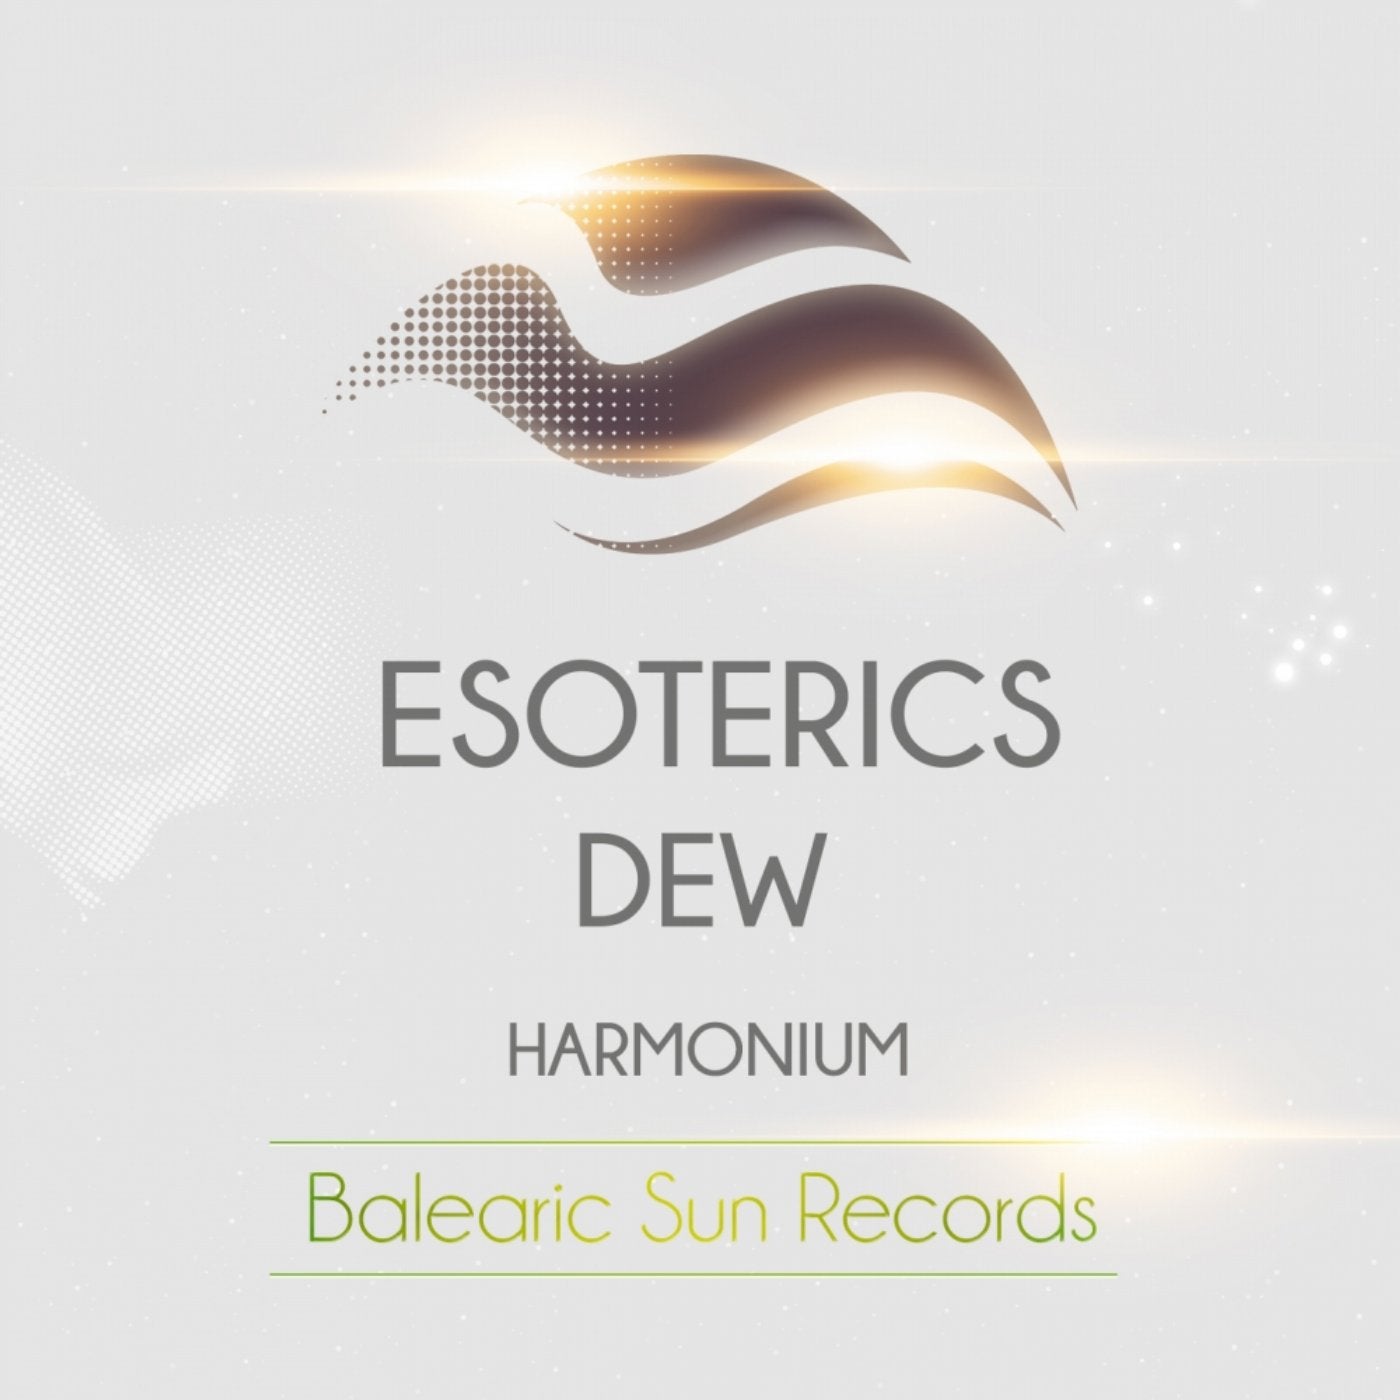 Harmonium music download - Beatport